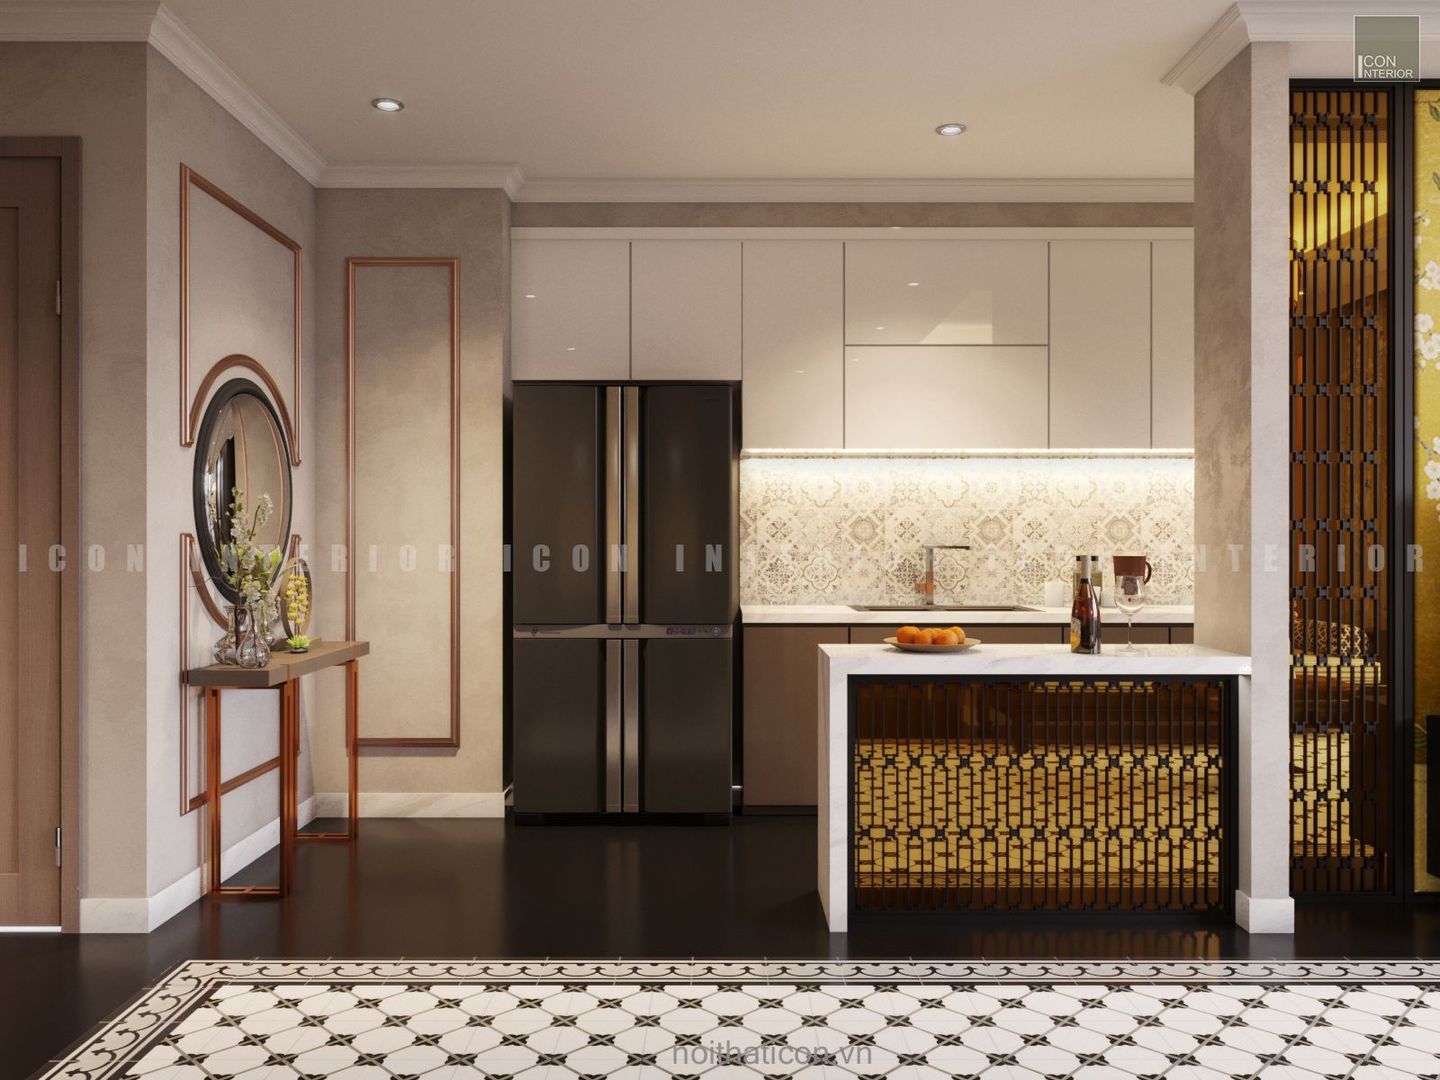 Nội thất căn hộ Vinhomes Central Park thiết kế theo phong cách Đông Dương, ICON INTERIOR ICON INTERIOR Cucina in stile asiatico